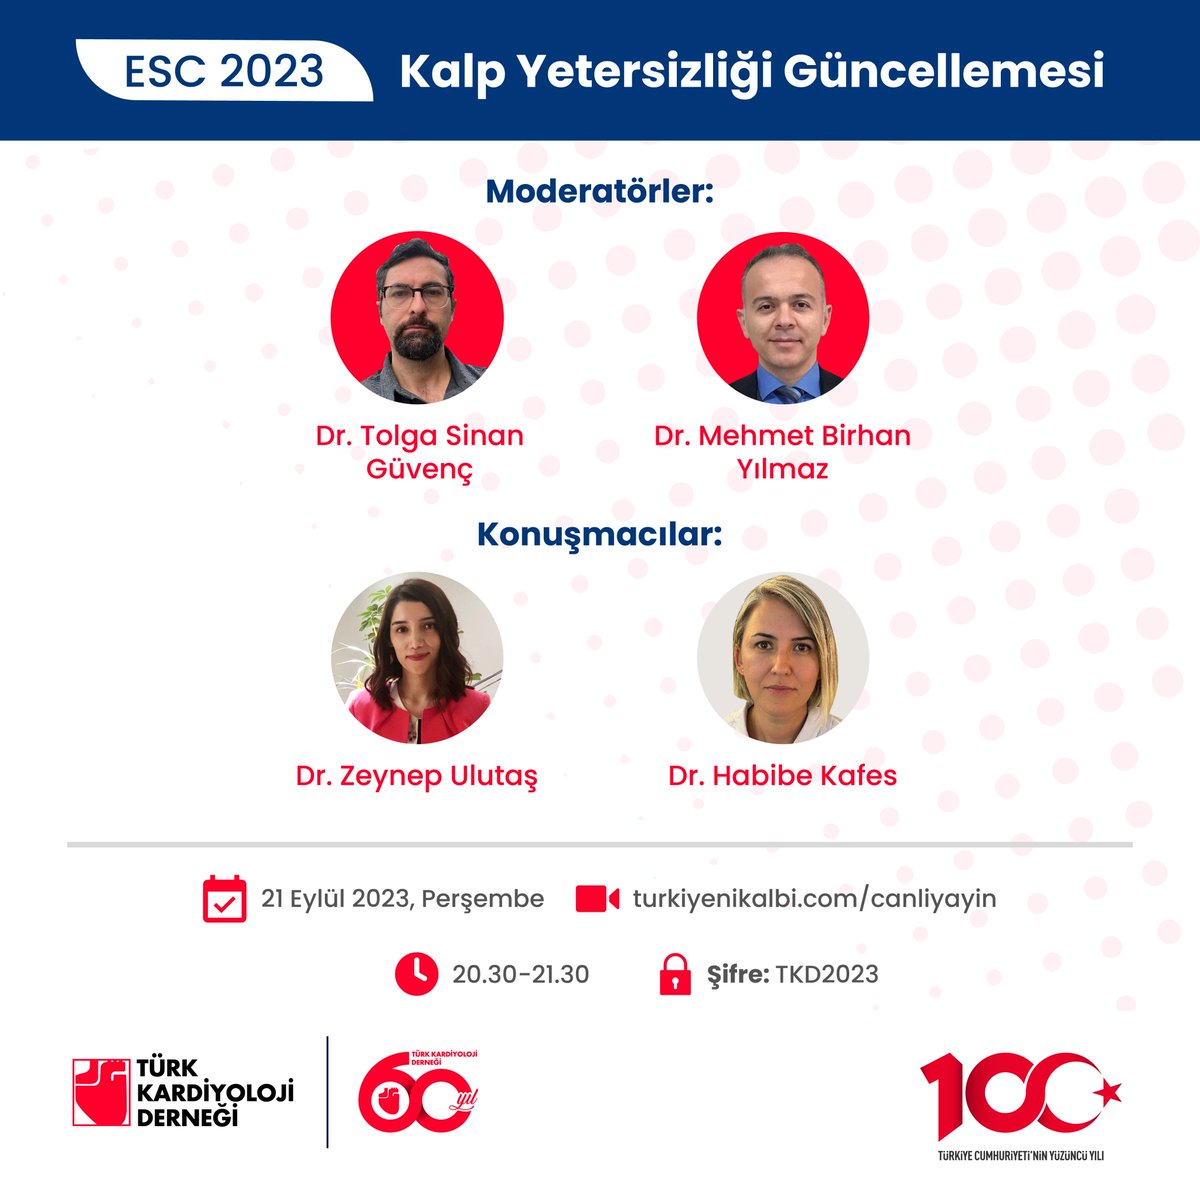 Dr. Tolga Sinan Güvenç ve Dr. Mehmet Birhan Yılmaz’ın moderatörlüğünde, ESC 2023 kalp yetersizliği güncellemelerini konuşuyoruz.
#ESCCongress #ESC2023 #InstaCardio #KalpYetersizliği  #AkutKalpYetersizliği  #TKD60Yıl #TürkKardiyolojiDerneği #Kardiyoloji  #TürkiyeninKalbi